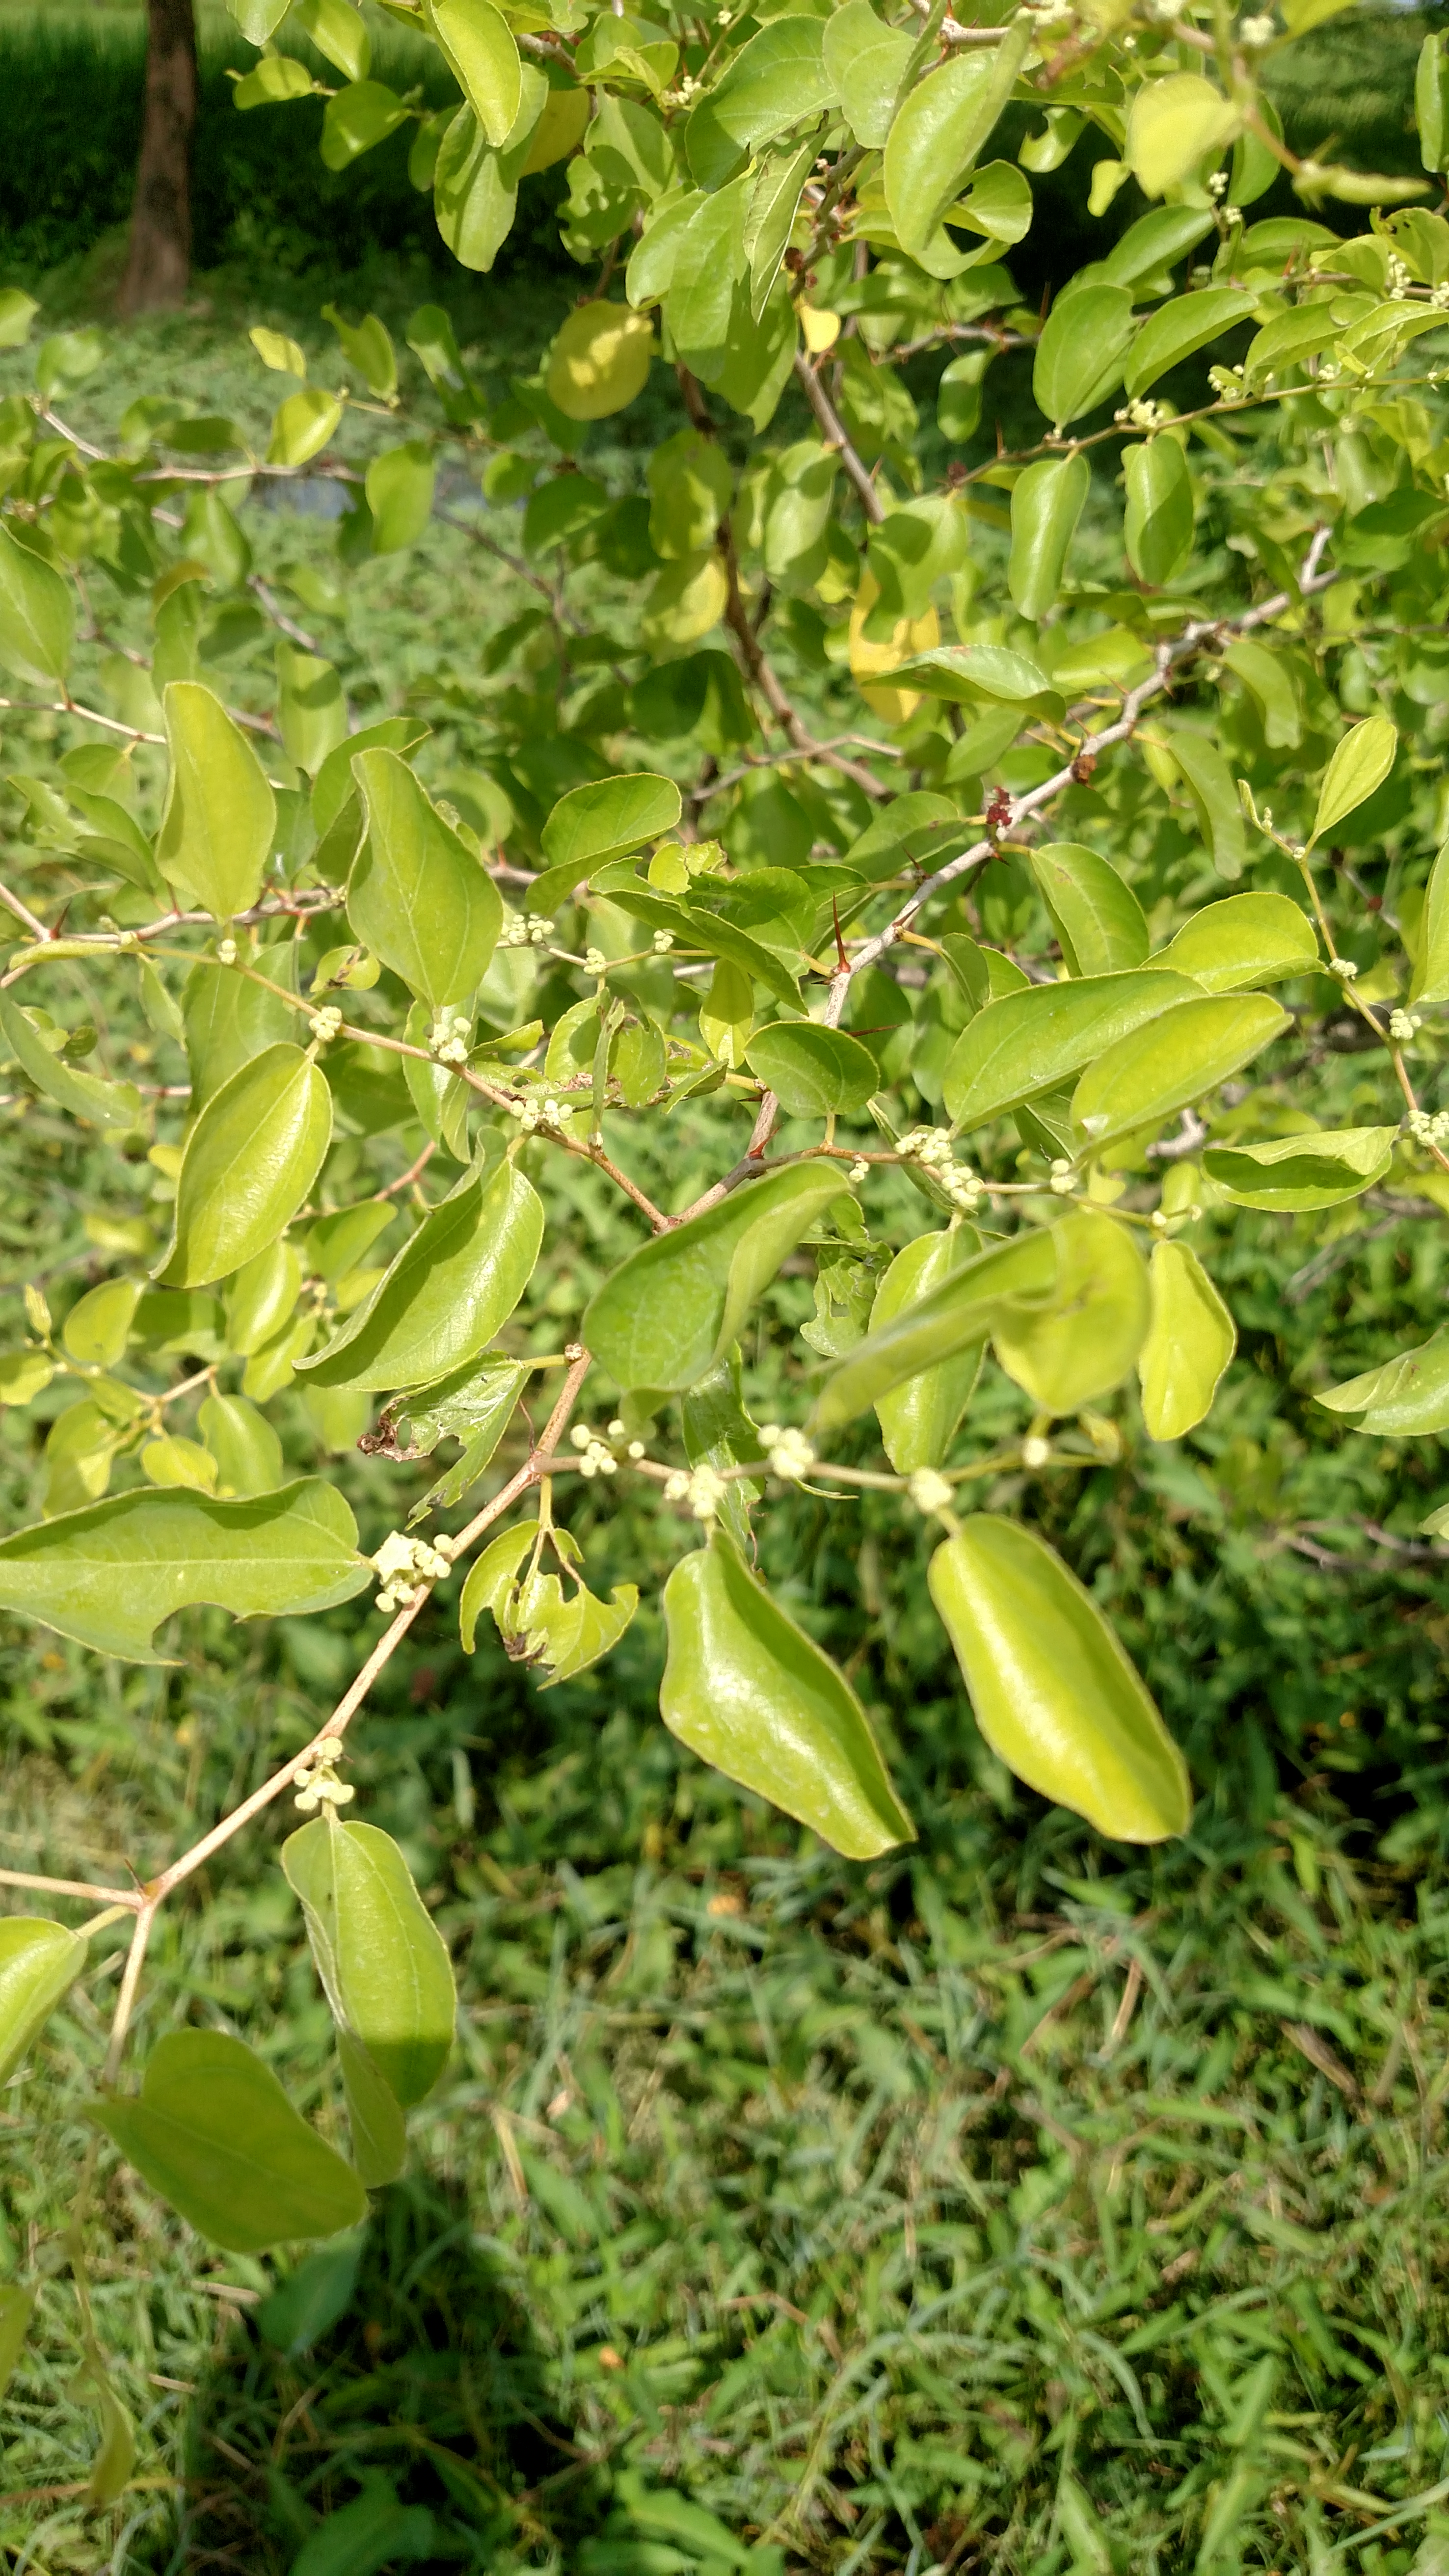 Beri leaf ( sidr leaves bairi leaves) chaheye koye Janta hain kaha se meley  GA please - Korangi Creek Road, Bhittai Colony Karachi - Rs350 -  